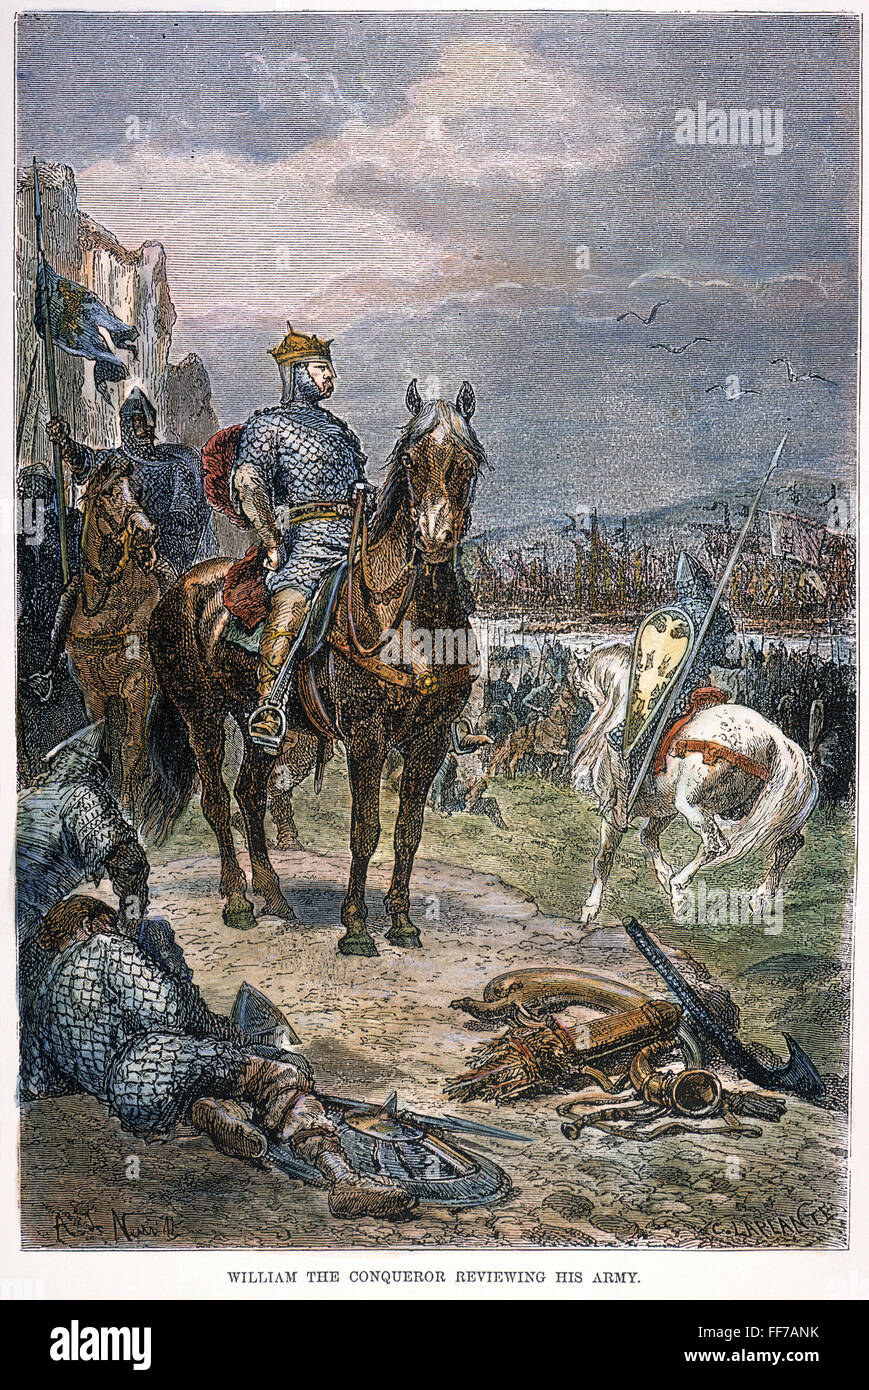 KING WILLIAM ich (1027-1087) /nof England. Bekannt als Wilhelm der Eroberer, seine Armee bei seiner Ankunft in England 1066 zu überprüfen. Holzstich, 19. Jahrhundert, nach Alphonse de Neuville. Stockfoto